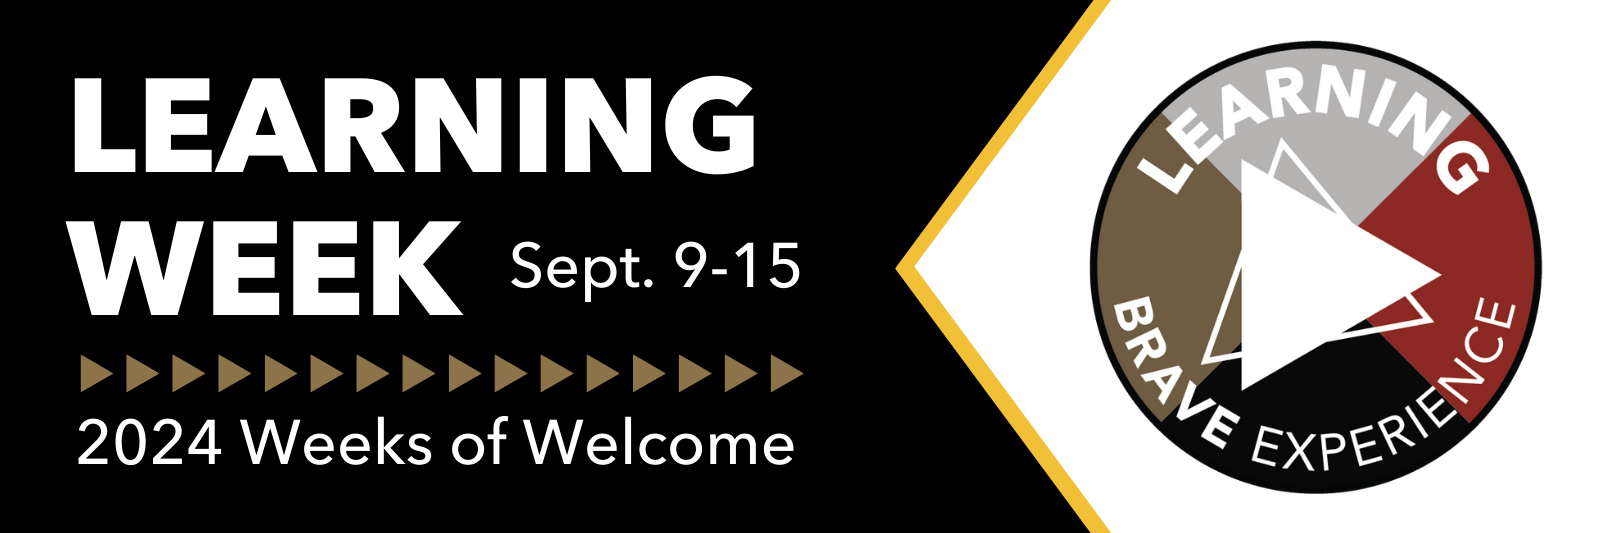 Learning Week: September 9-15